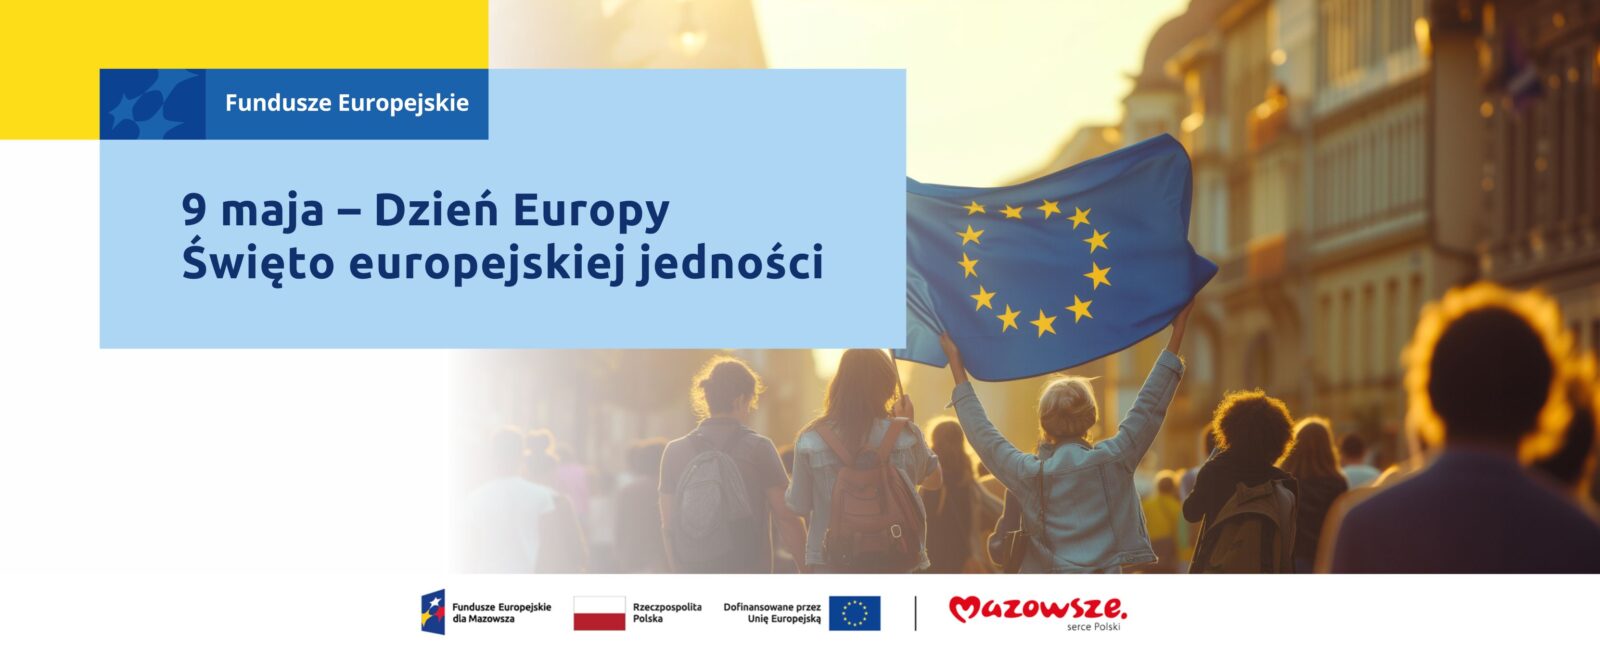 Na grafice znajduje się hasło: 9 maja – Dzień Europy. Święto europejskiej jedności. W tle zdjęcie grupy osób, jedna z nich niesie flagę Unii Europejskiej.